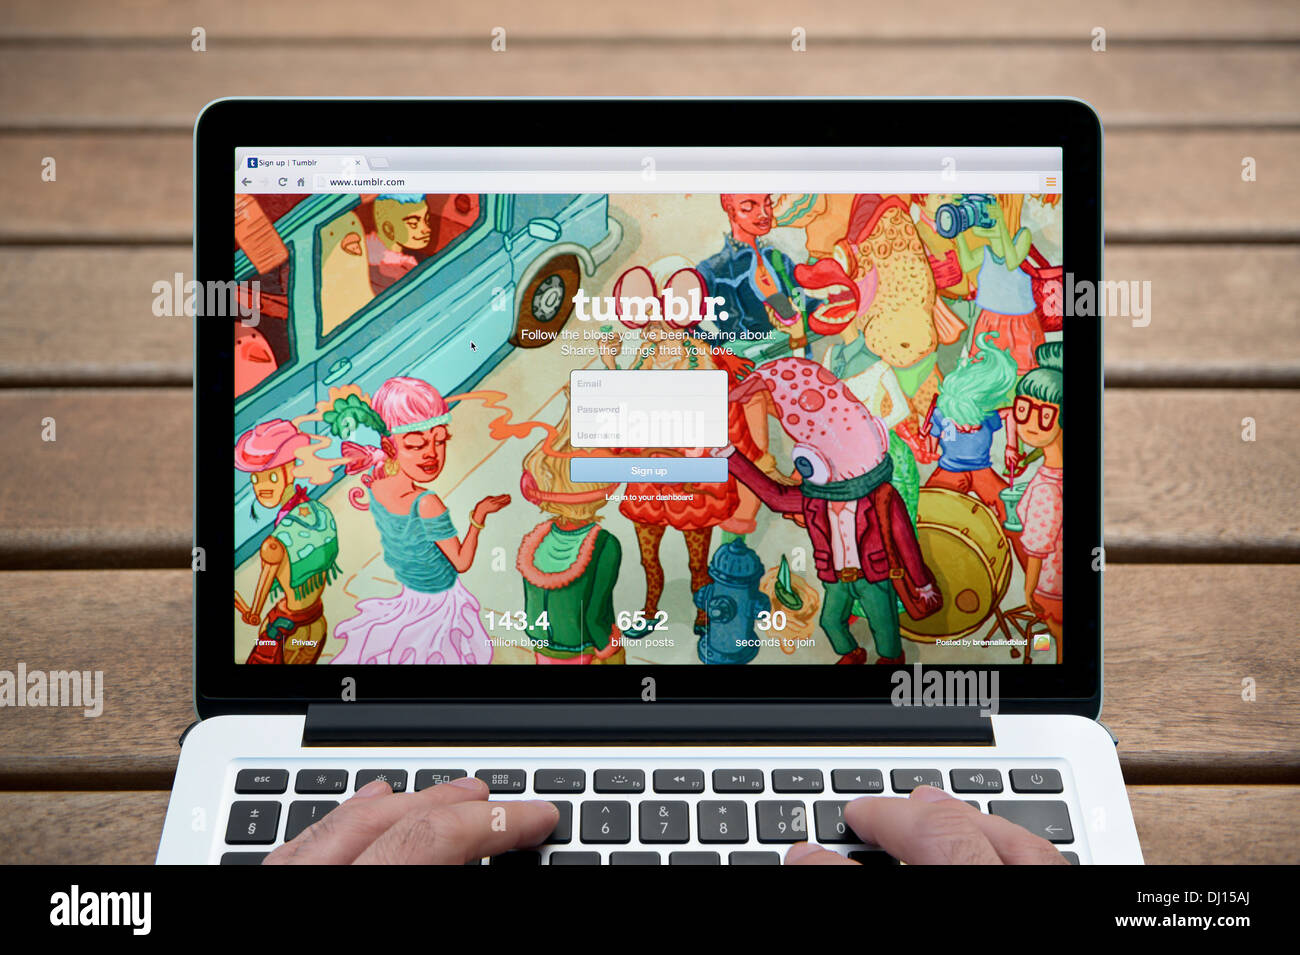 Le Tumblr site sur un MacBook contre un banc en bois fond de plein air y compris les doigts d'un homme (usage éditorial uniquement). Banque D'Images